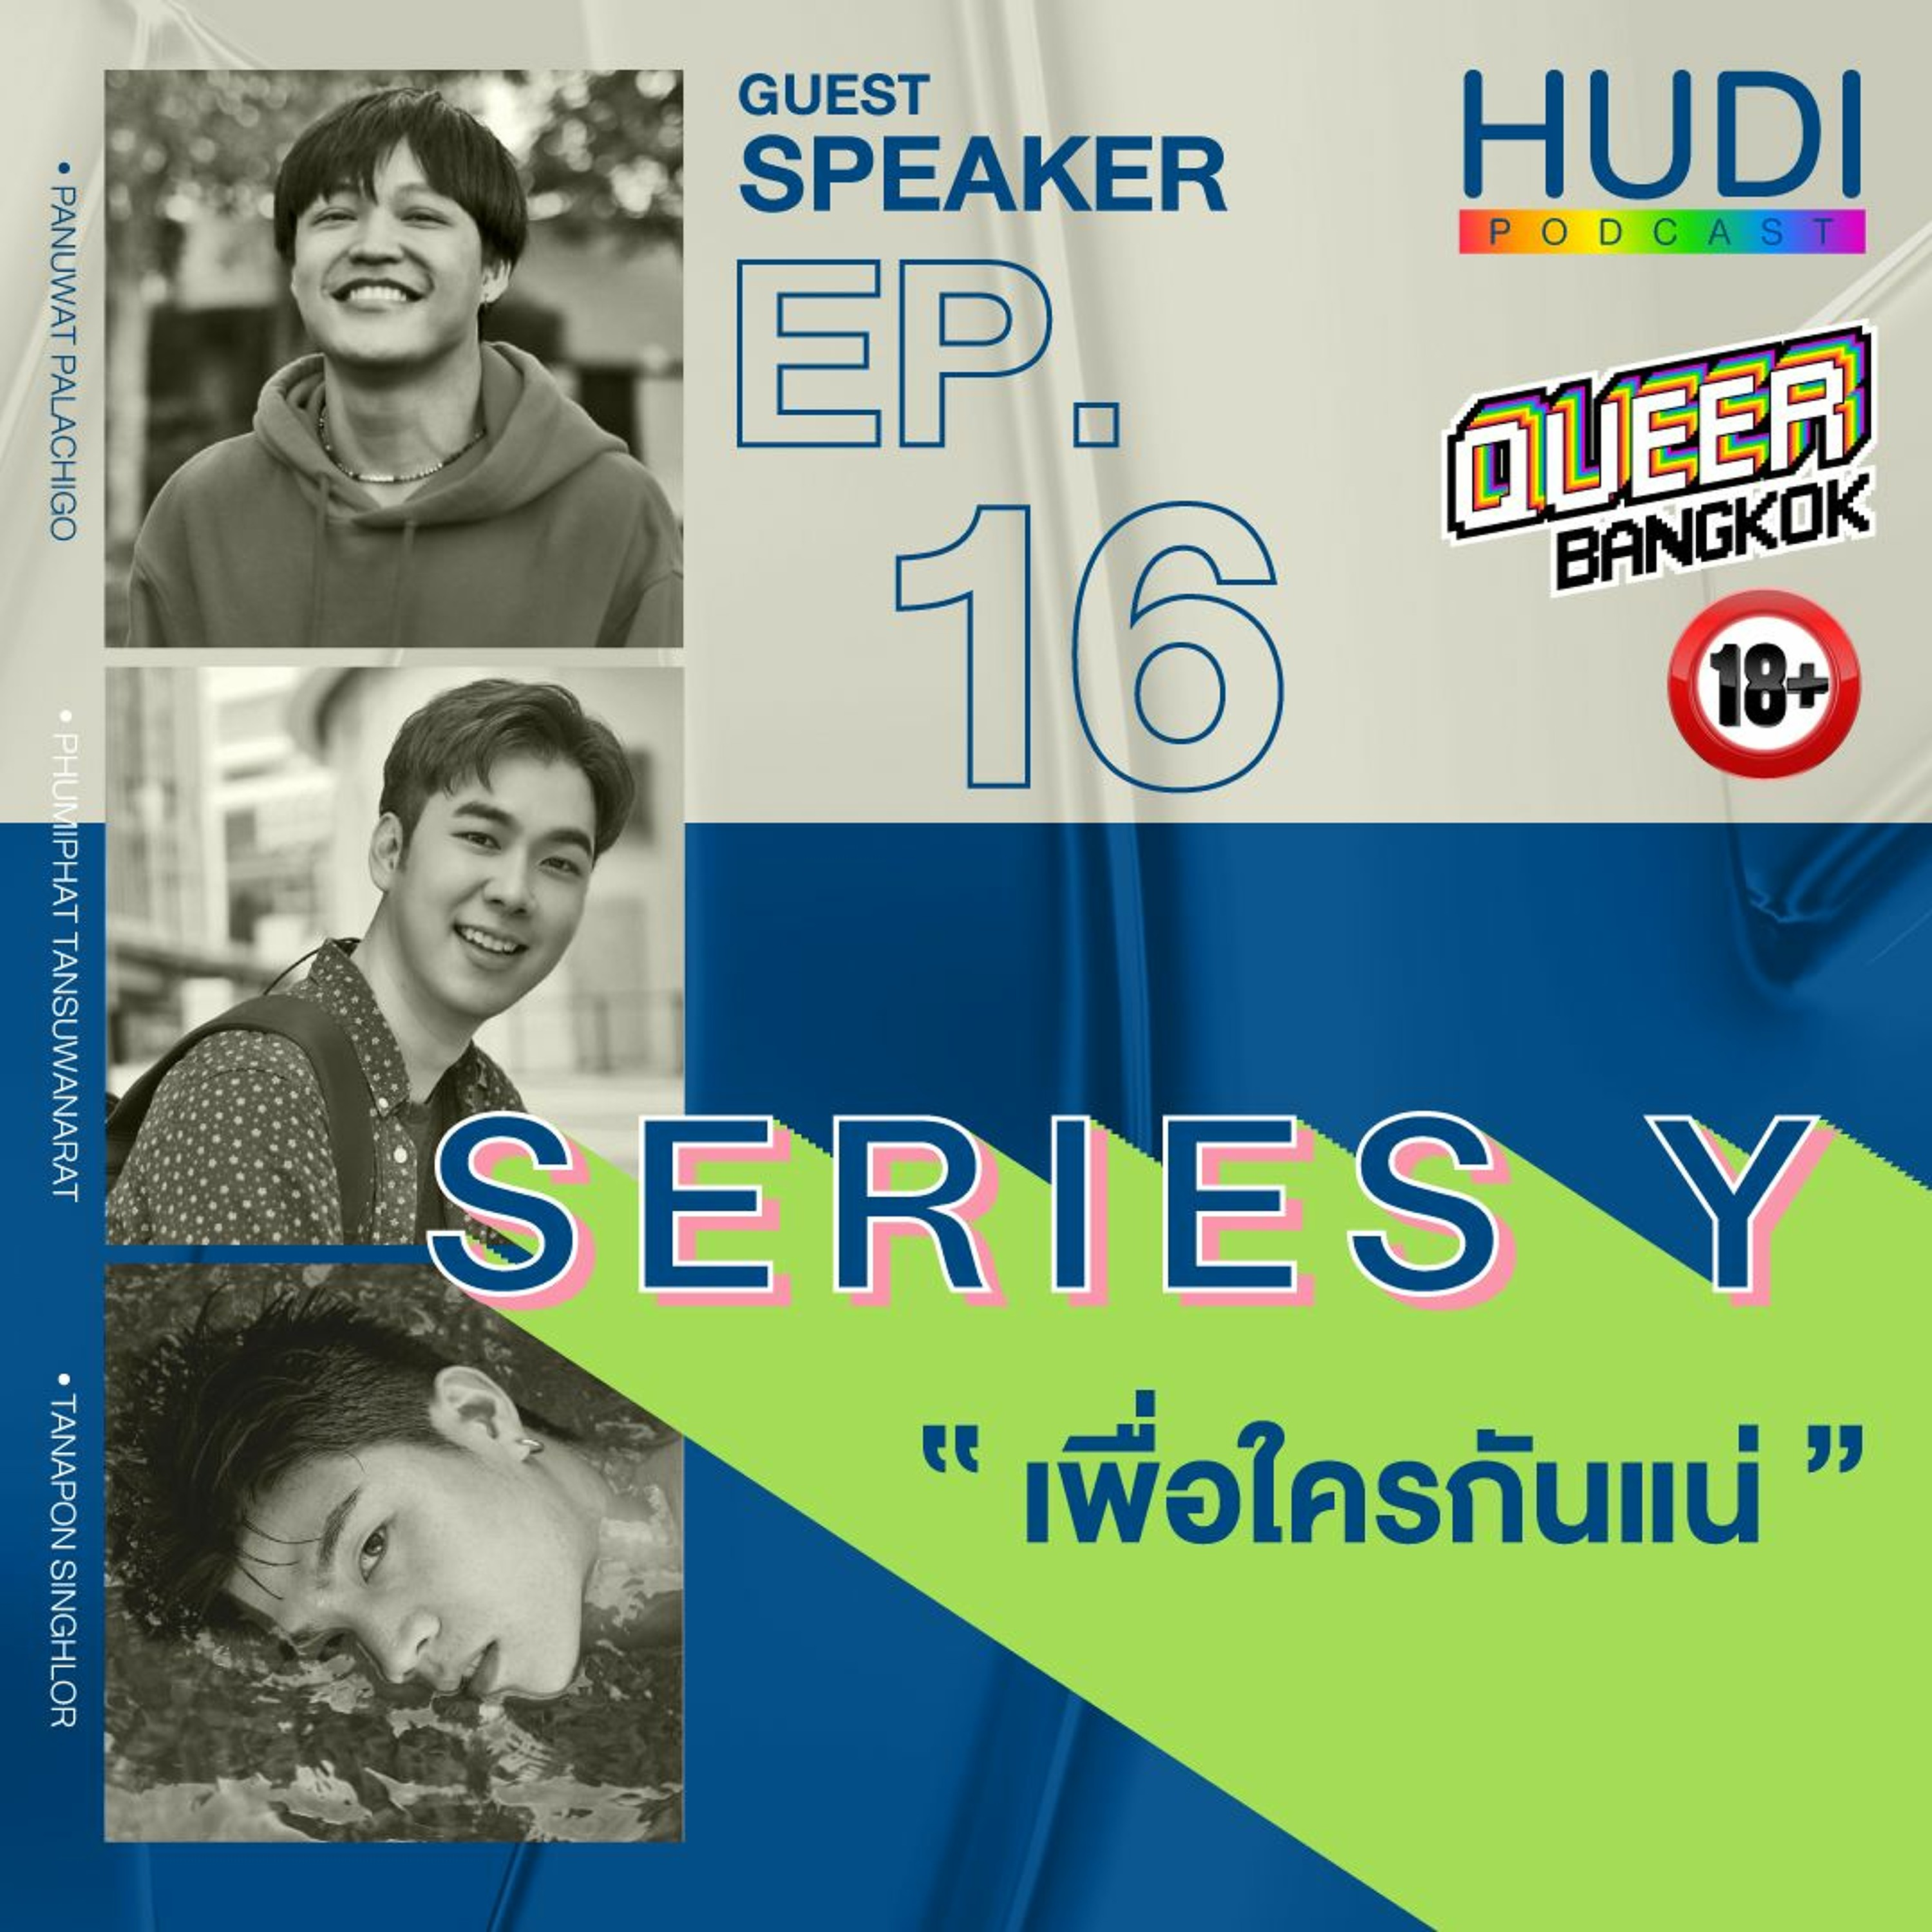 Queer Bangkok Ep.16 - Series Y เพื่อใครกันแน่